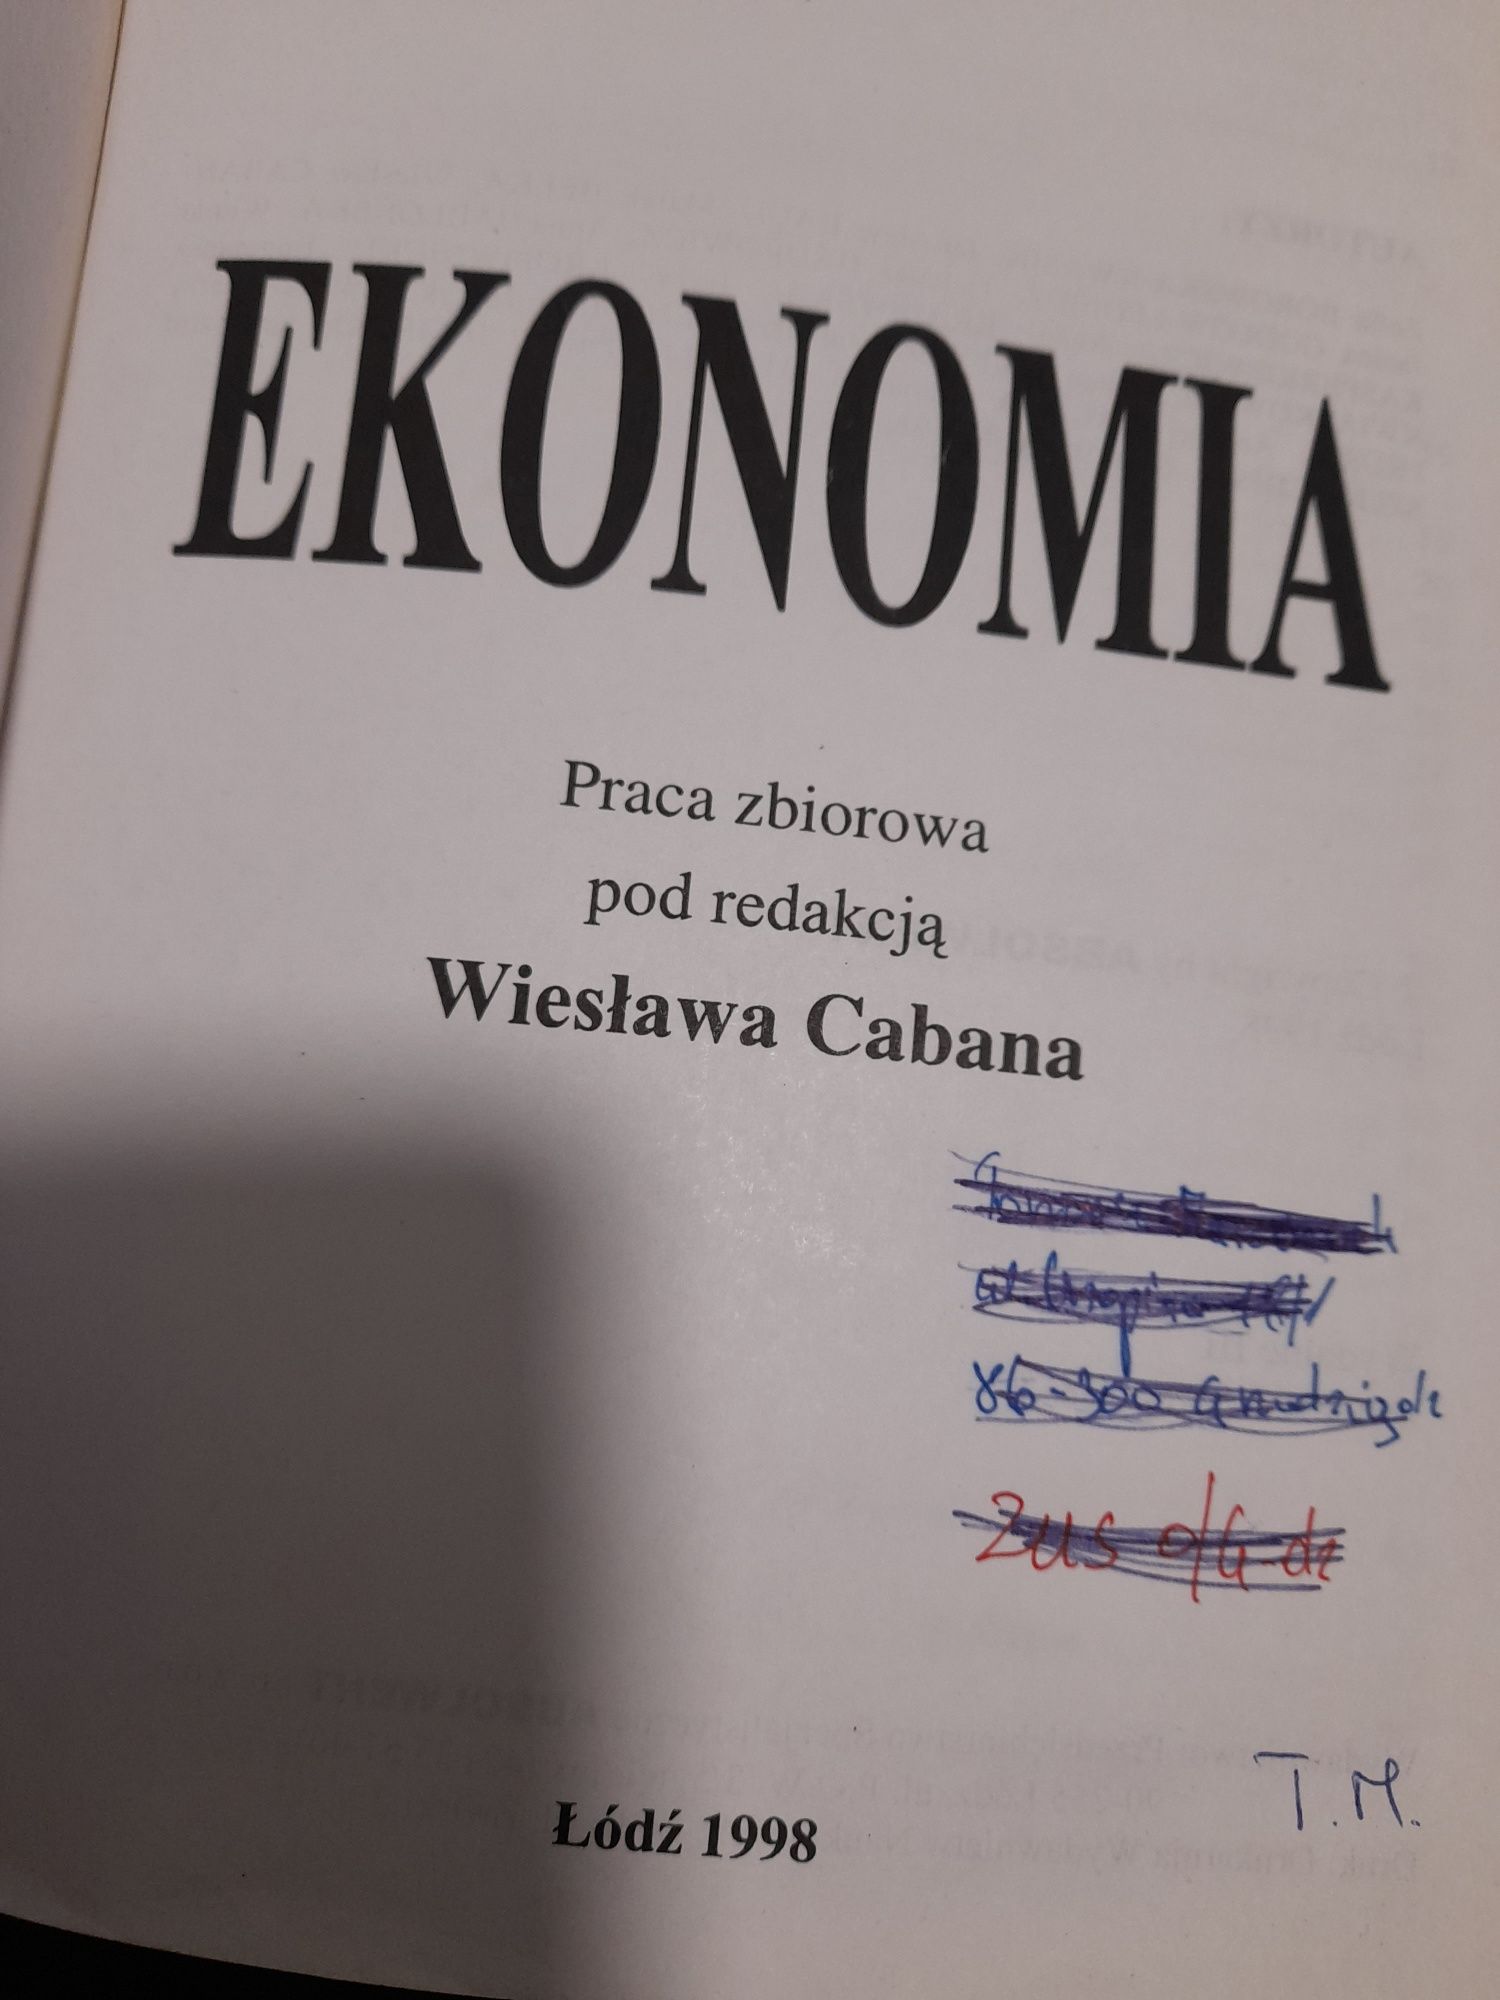 Ekonomia Wiesław Caban wyd. 1998 r.